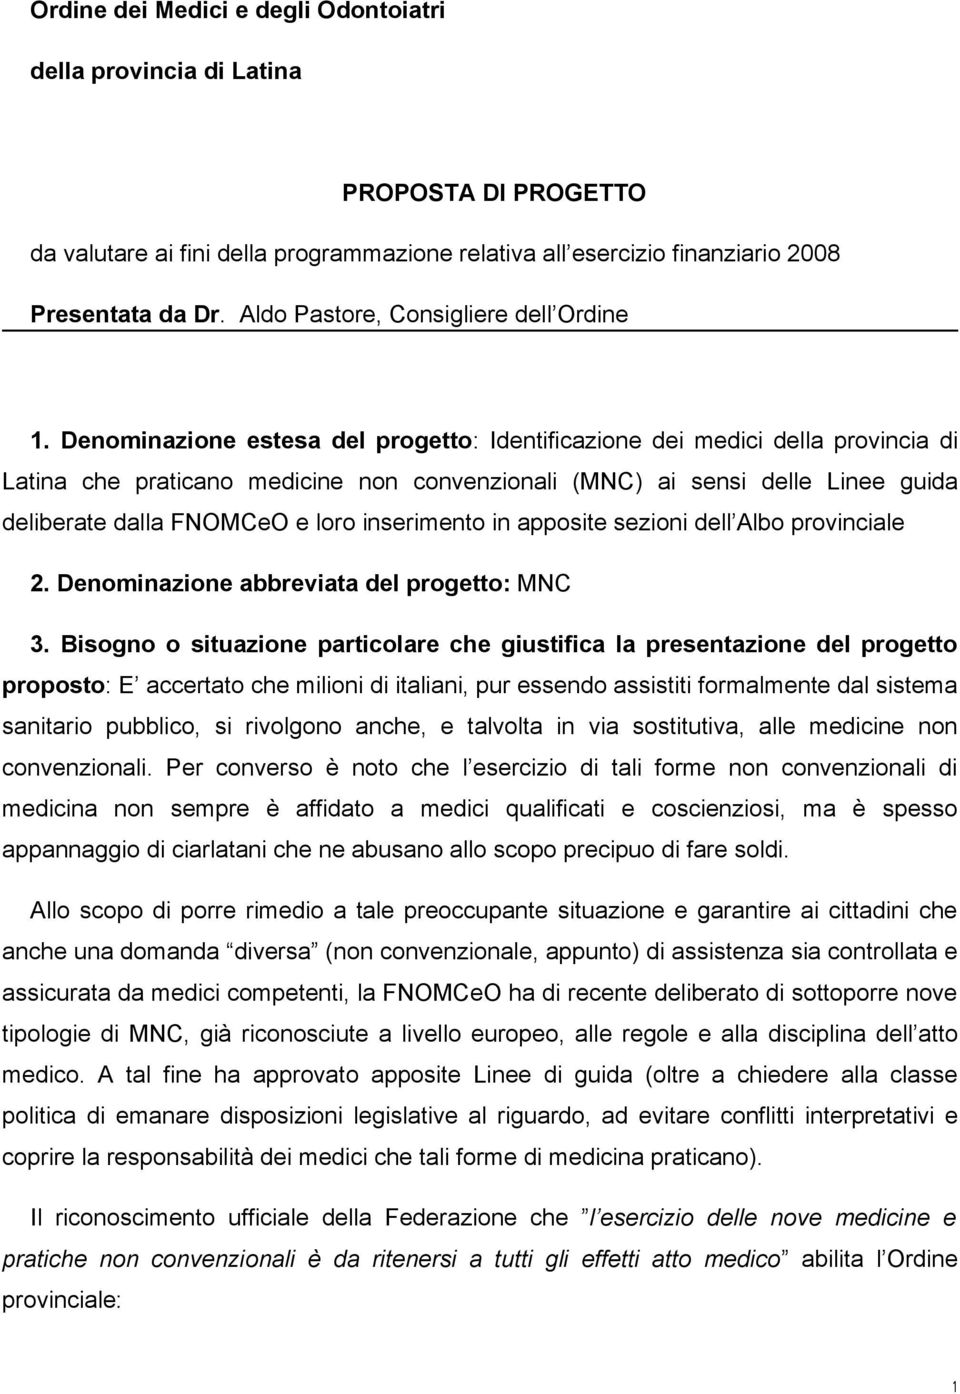 Denominazione estesa del progetto: Identificazione dei medici della provincia di Latina che praticano medicine non convenzionali (MNC) ai sensi delle Linee guida deliberate dalla FNOMCeO e loro